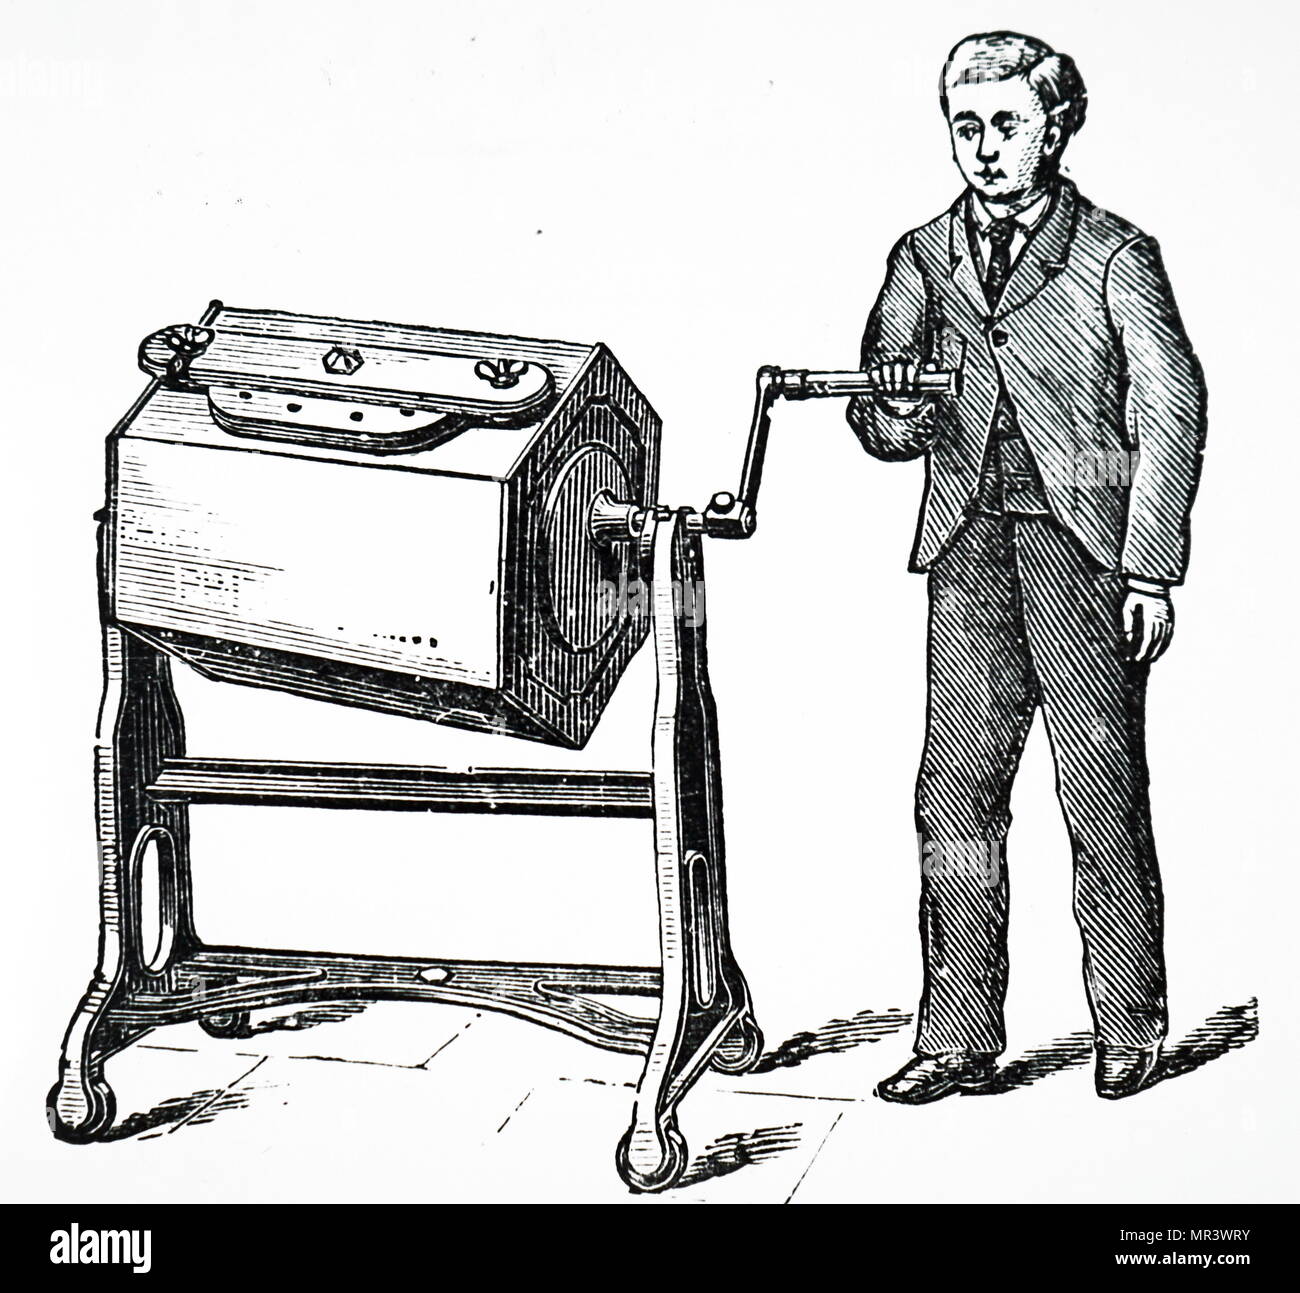 Kupferstich mit der Darstellung eines Hand-angetriebene exzentrische Butterfass. Die Agitation der Creme wurde durch die steigende und fallende des gegenüberliegenden Enden der Nullförderung erreicht. Vom 19. Jahrhundert Stockfoto